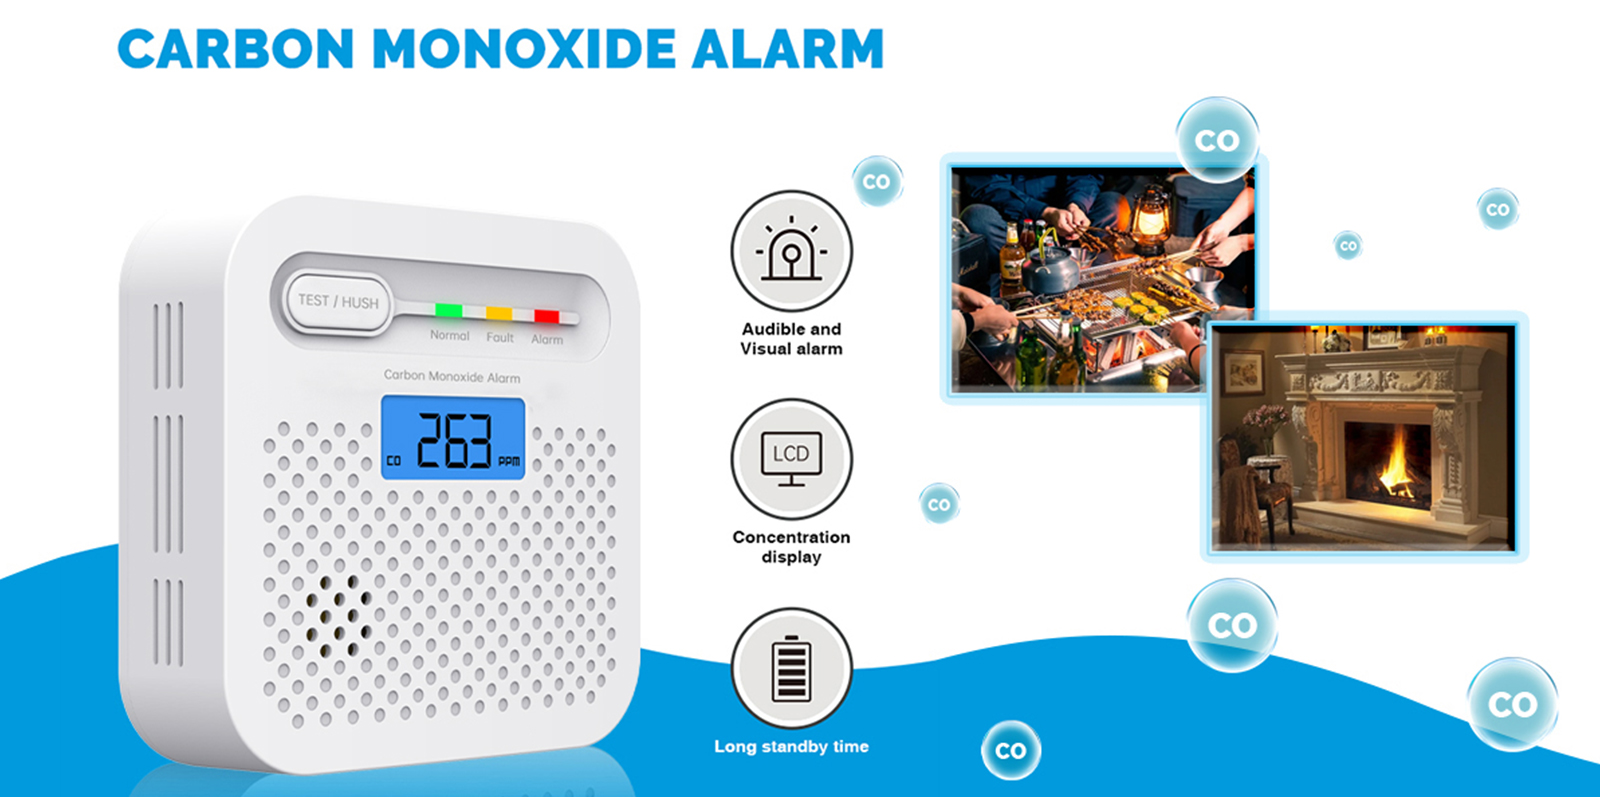 Această alarmă de monoxid de carbon detectează rapid monoxidul de carbon, ținându-te pe tine și familia ta în afara pericolului